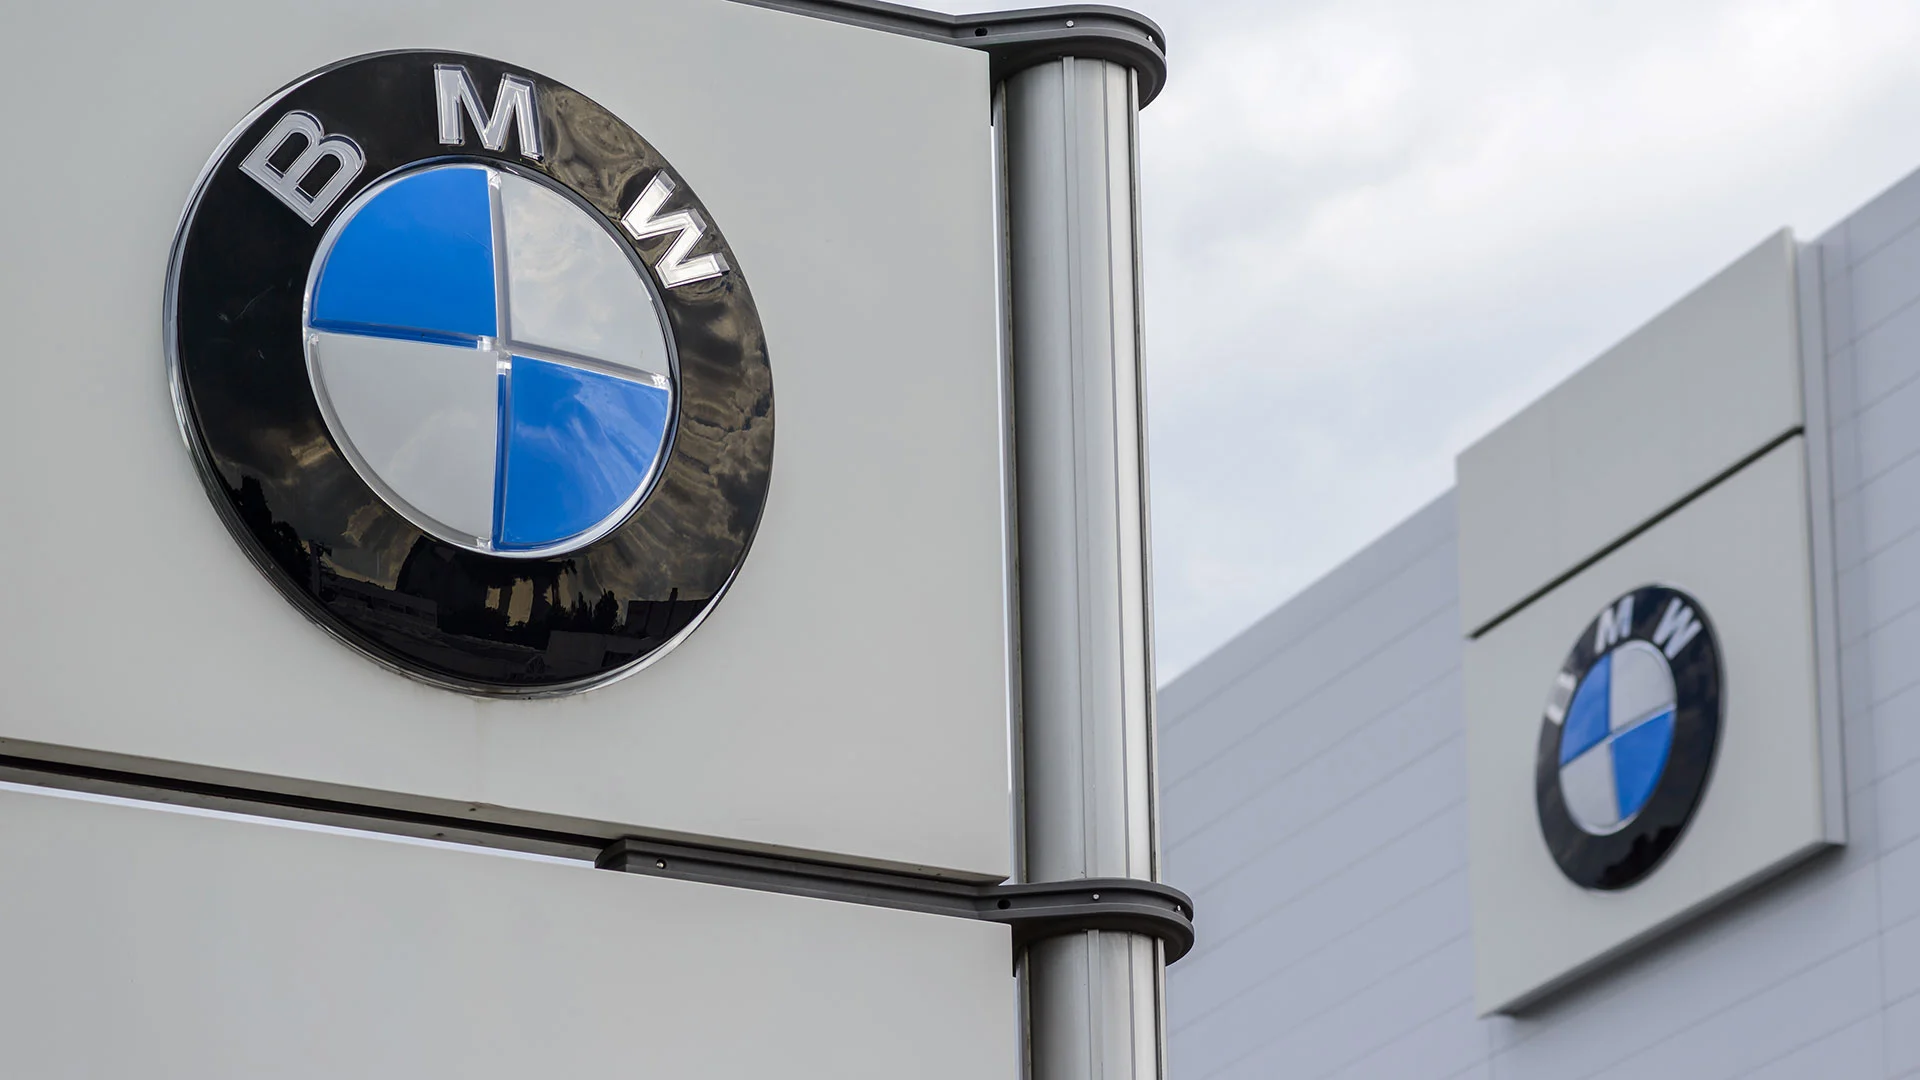 Kampf der Autobauer: Zweistelliges Wachstum treibt BMW&#8209;Aktie an. Kann Mercedes&#8209;Benz da mithalten? (Foto: AR Pictures/Shutterstock)